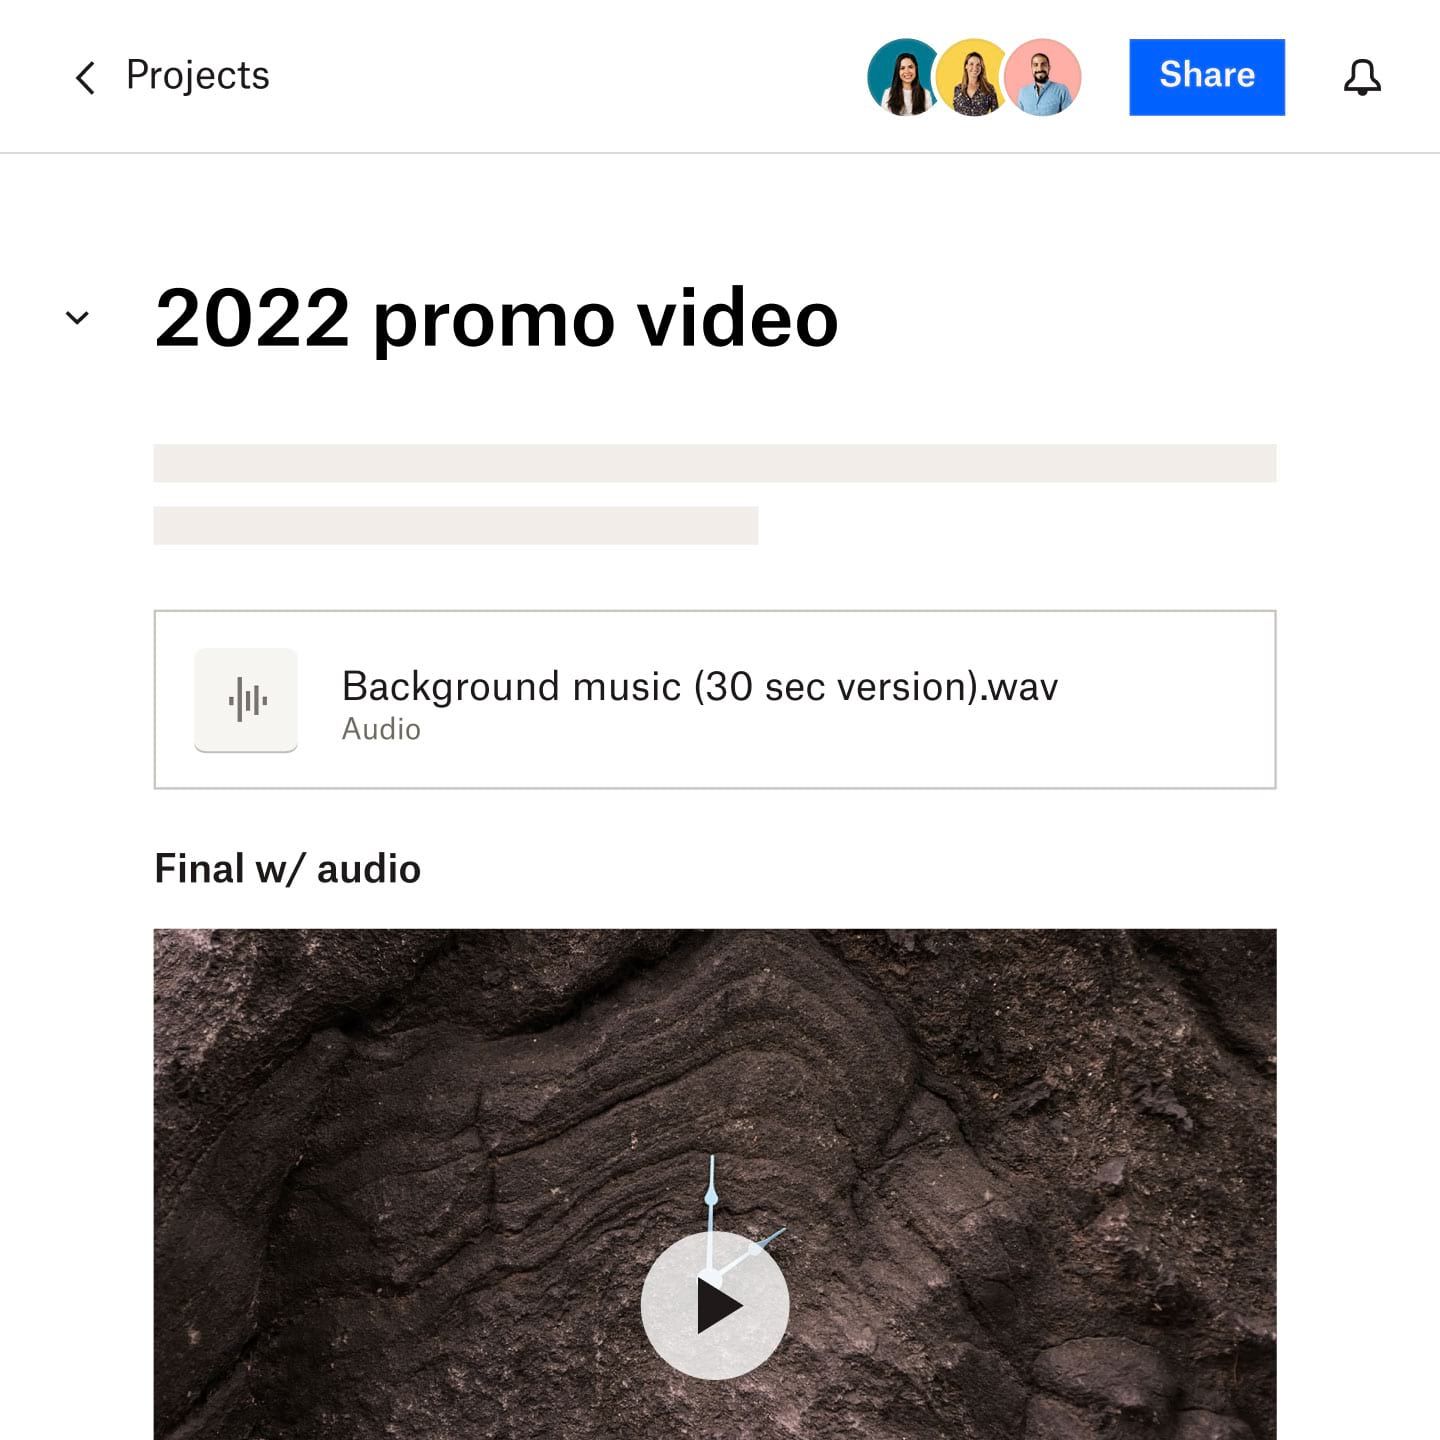 一份 Dropbox Paper 文档，标题为“2022 宣传视频”，其中包含视频中使用的音频文件的链接以及完整视频的部分屏幕截图